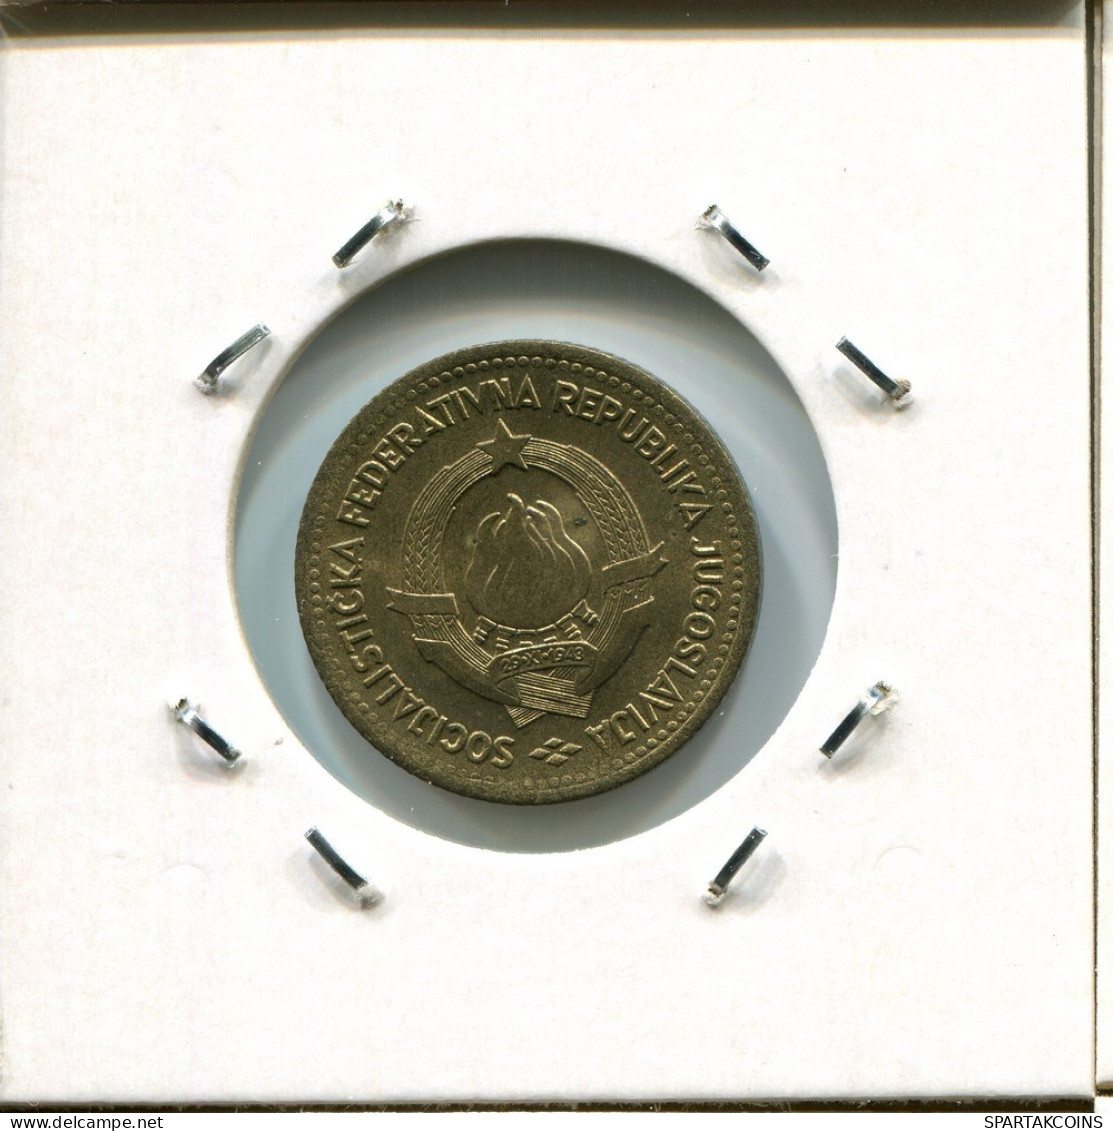 10 DINARA 1963 YUGOSLAVIA Coin #AR453.U.A - Jugoslavia